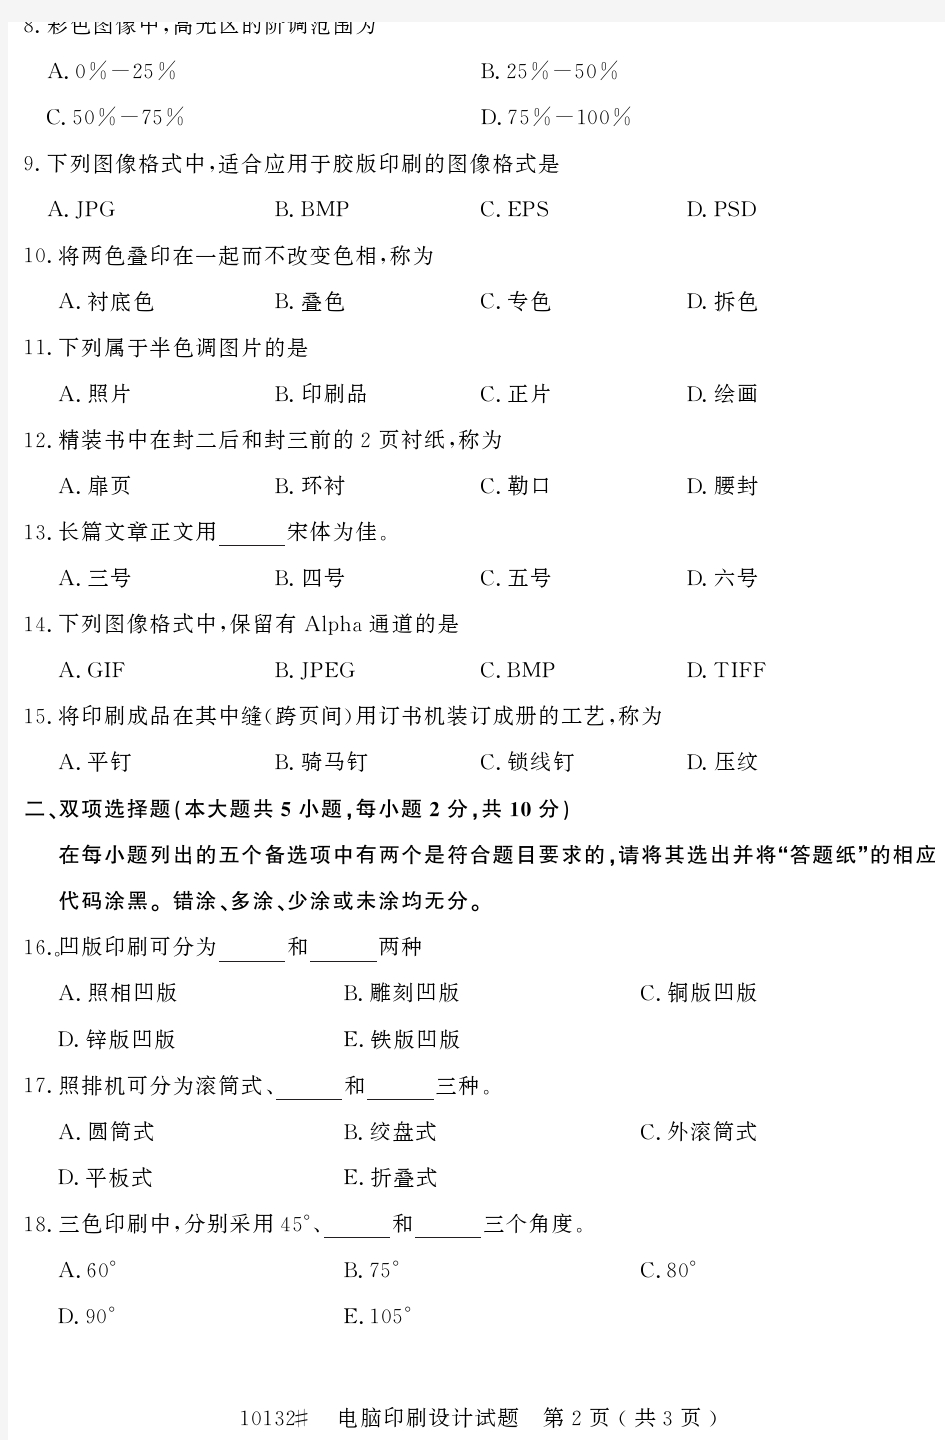 自学考试_浙江省2016年10月高等教育自学考试电脑印刷设计试题(10132)